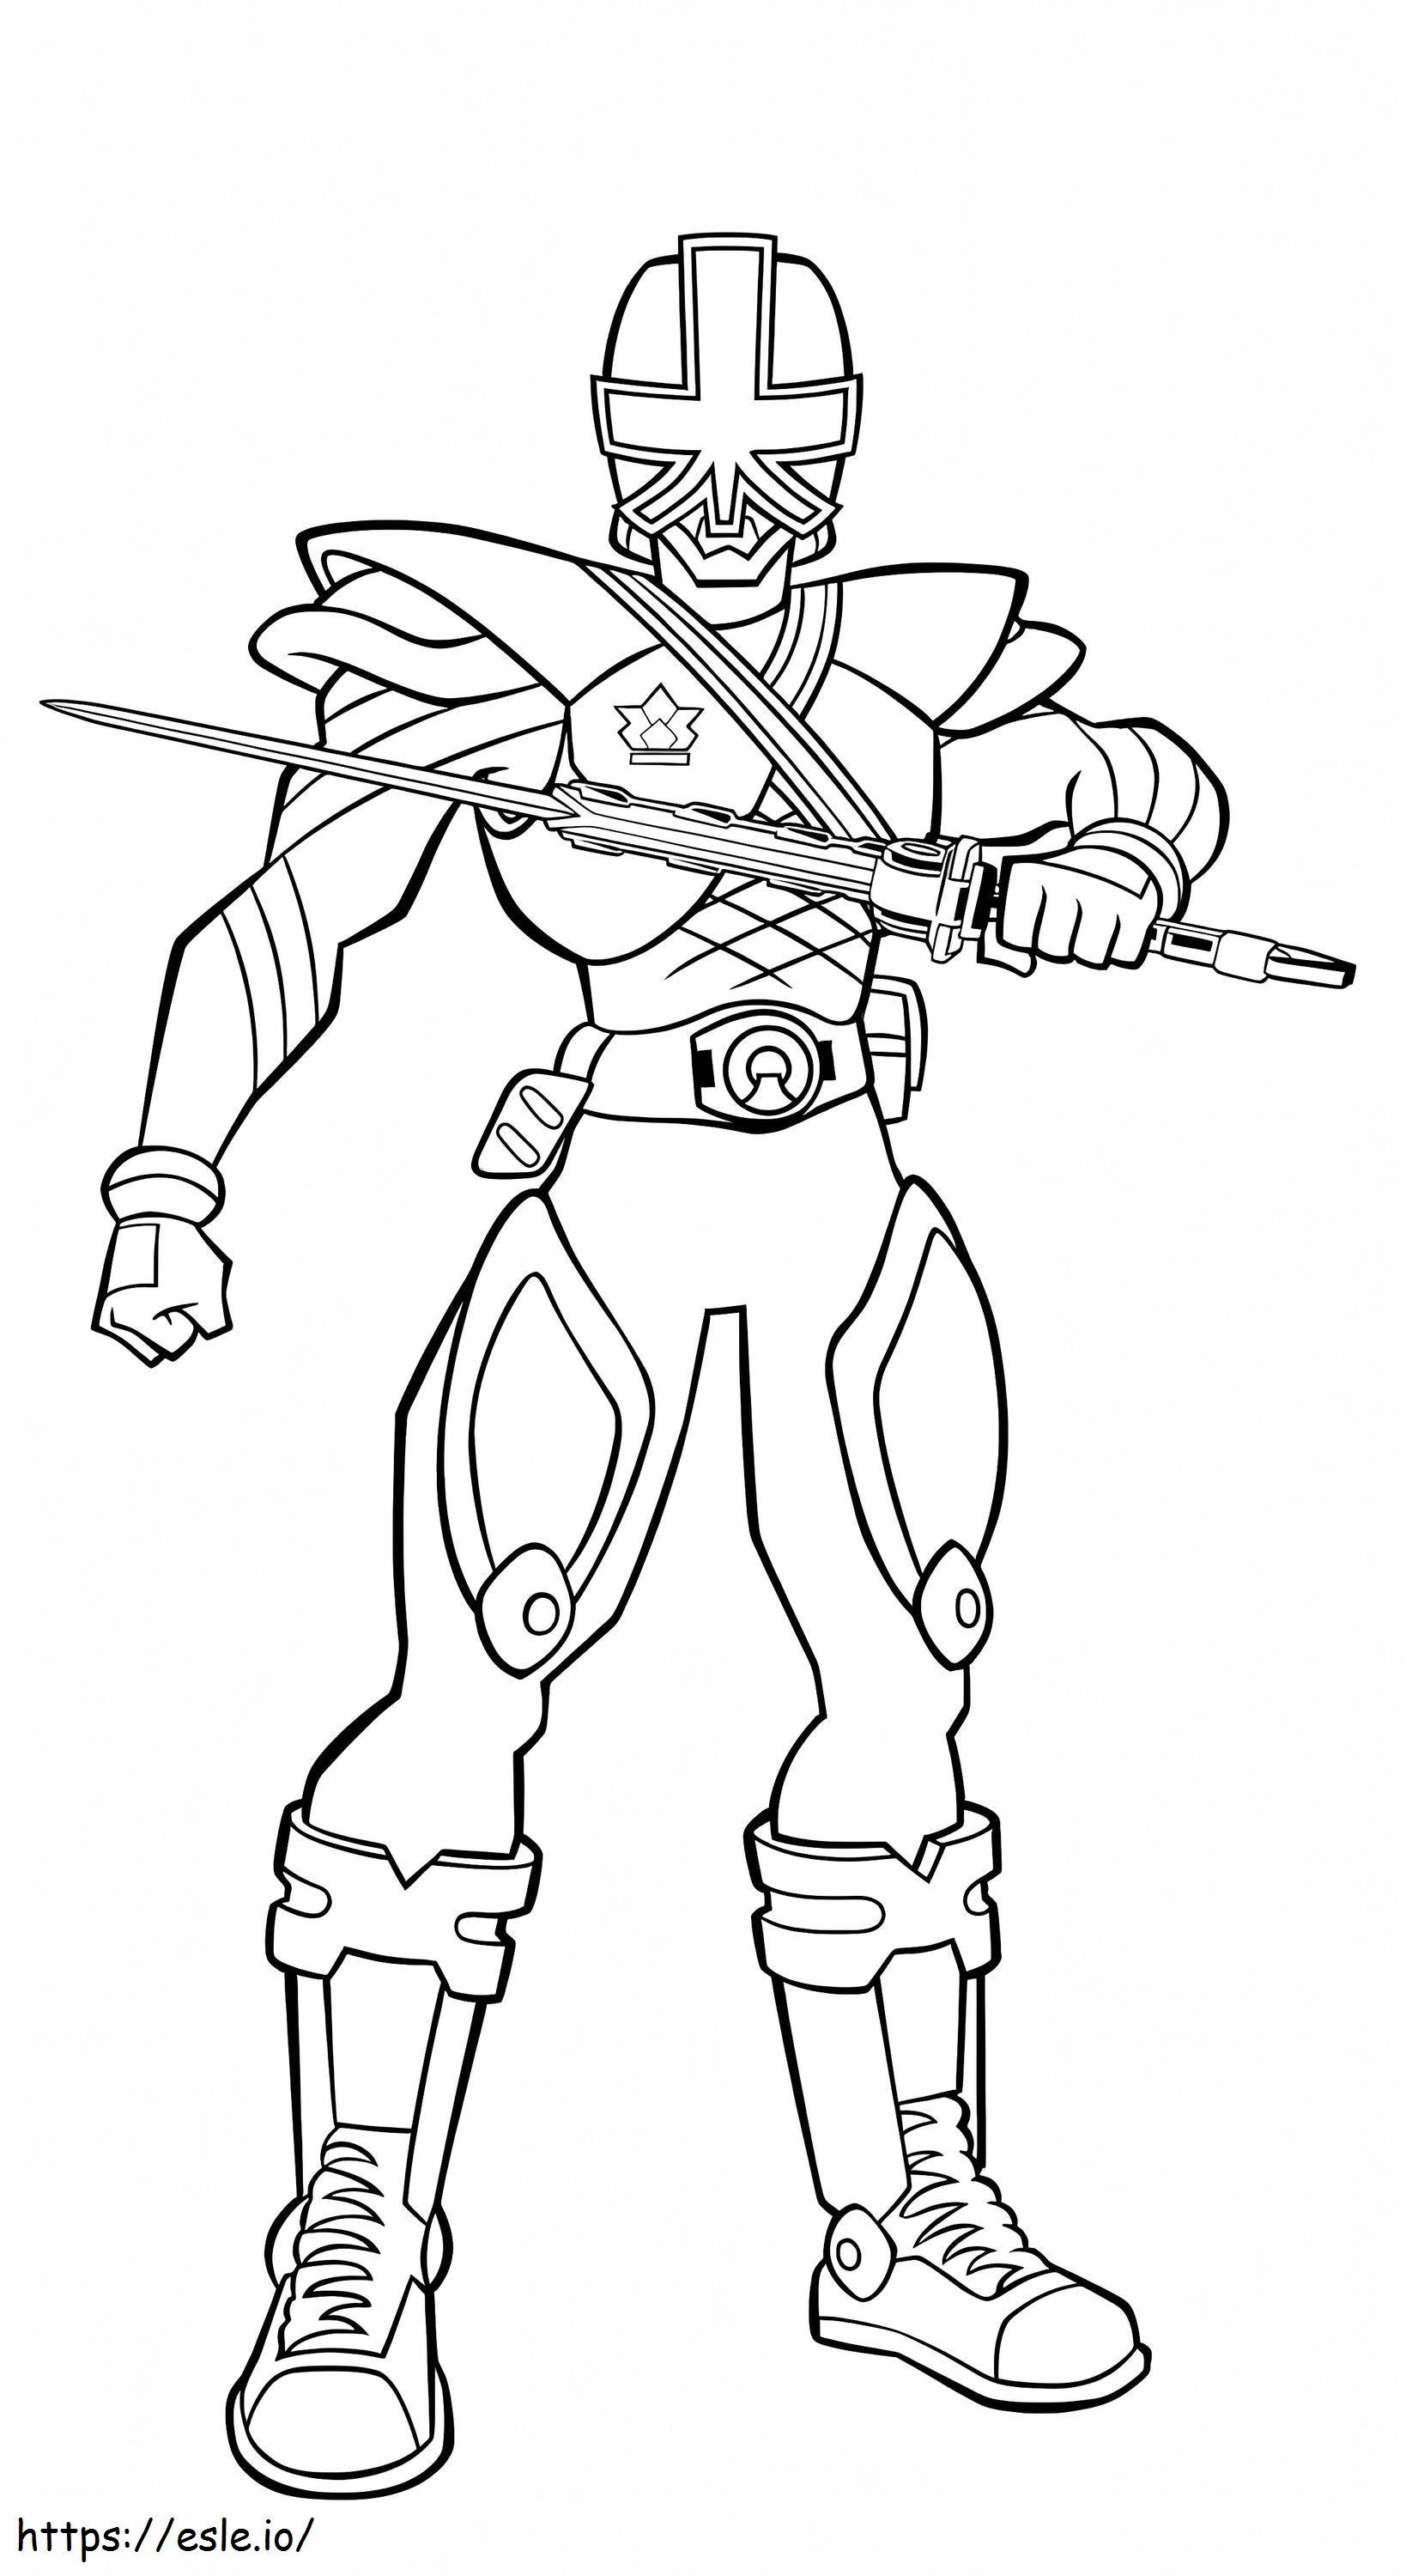 Power Ranger Samurai Con Espada coloring page